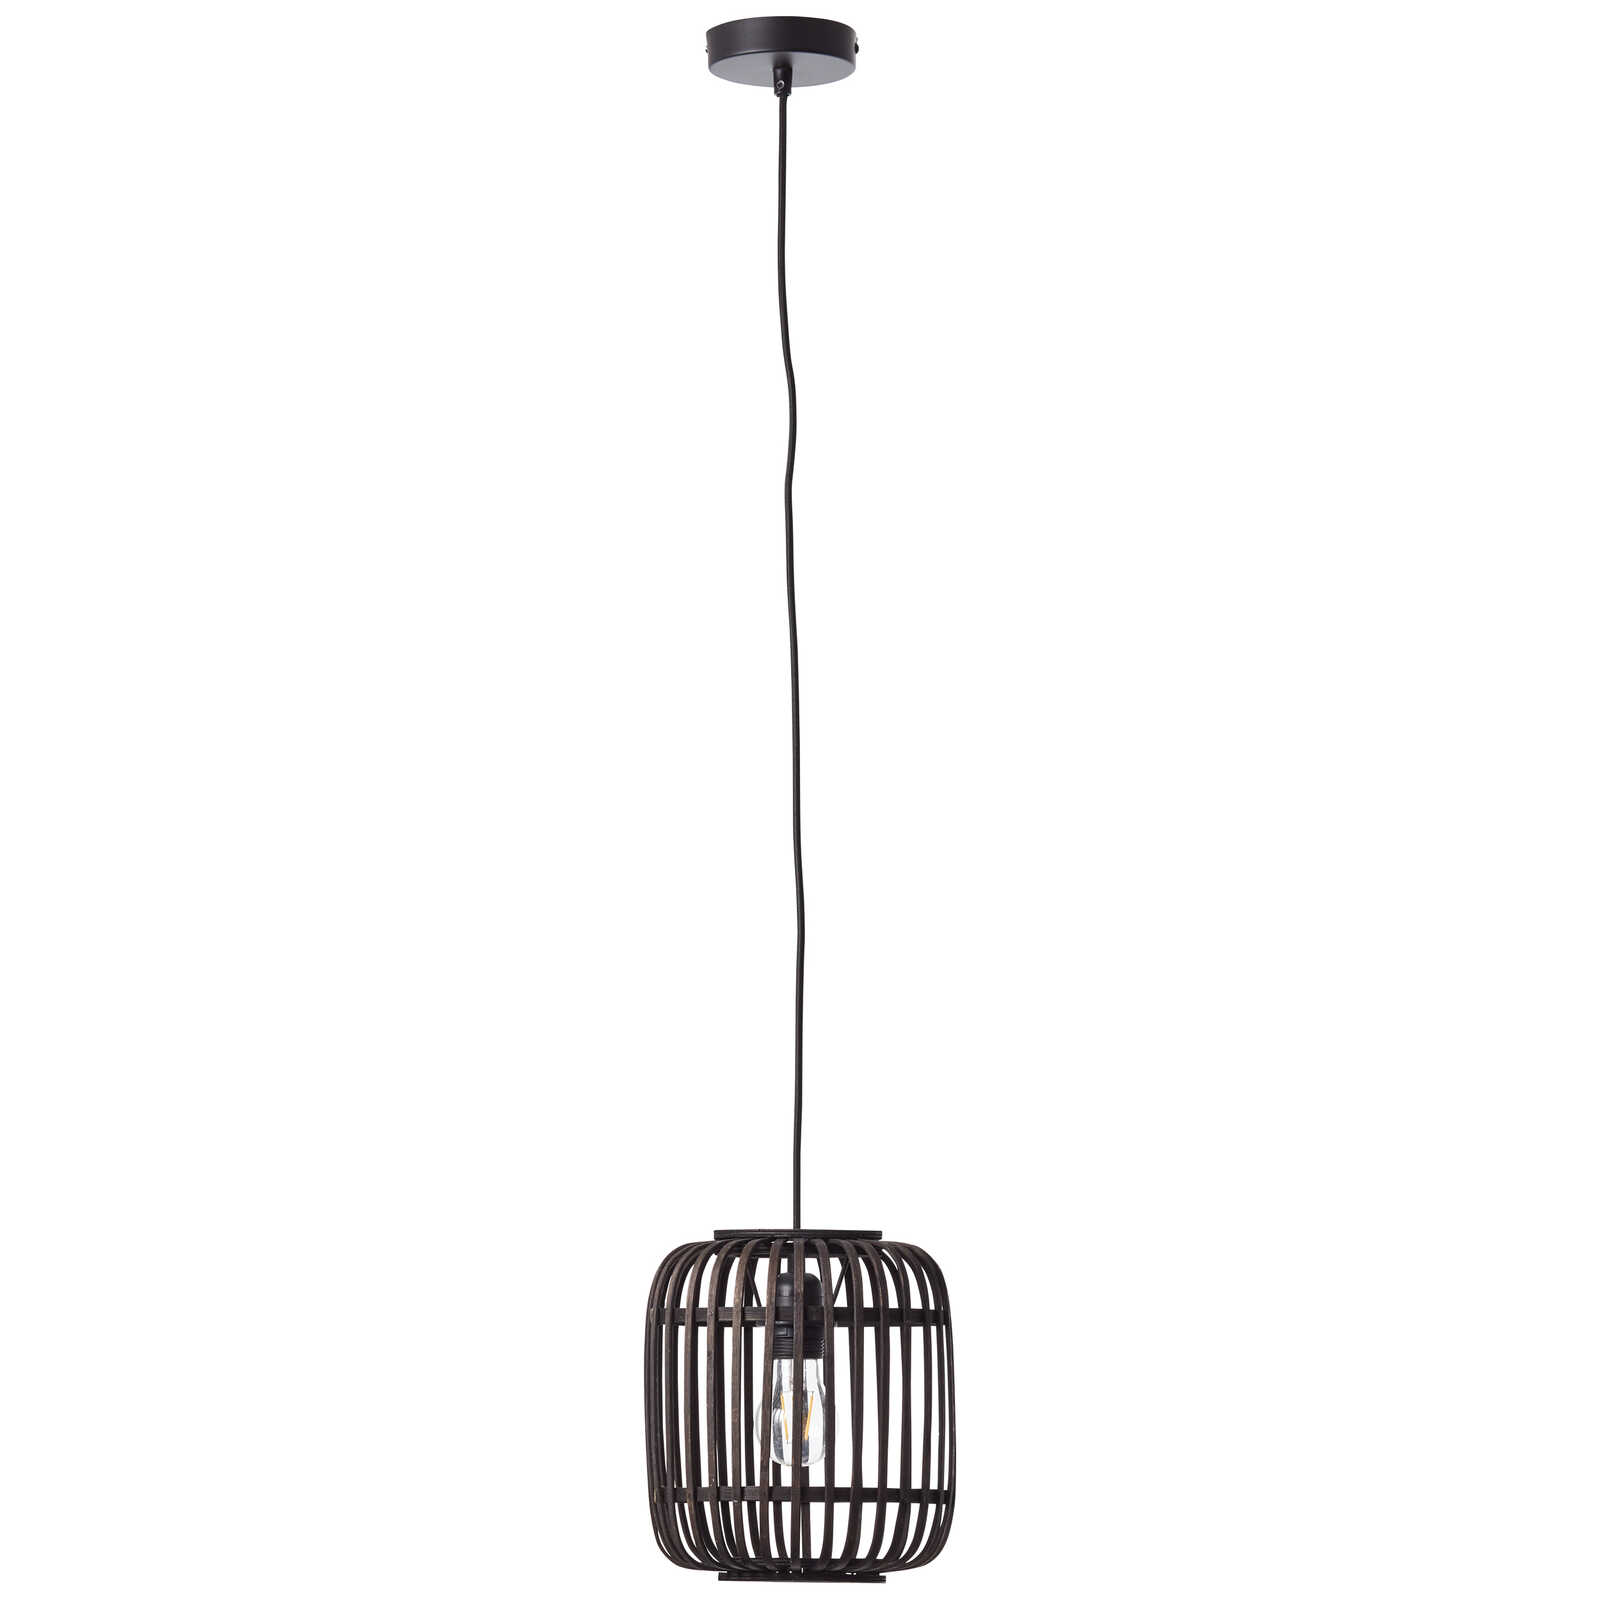             Metalen hanglamp - Willi 17 - Zwart
        